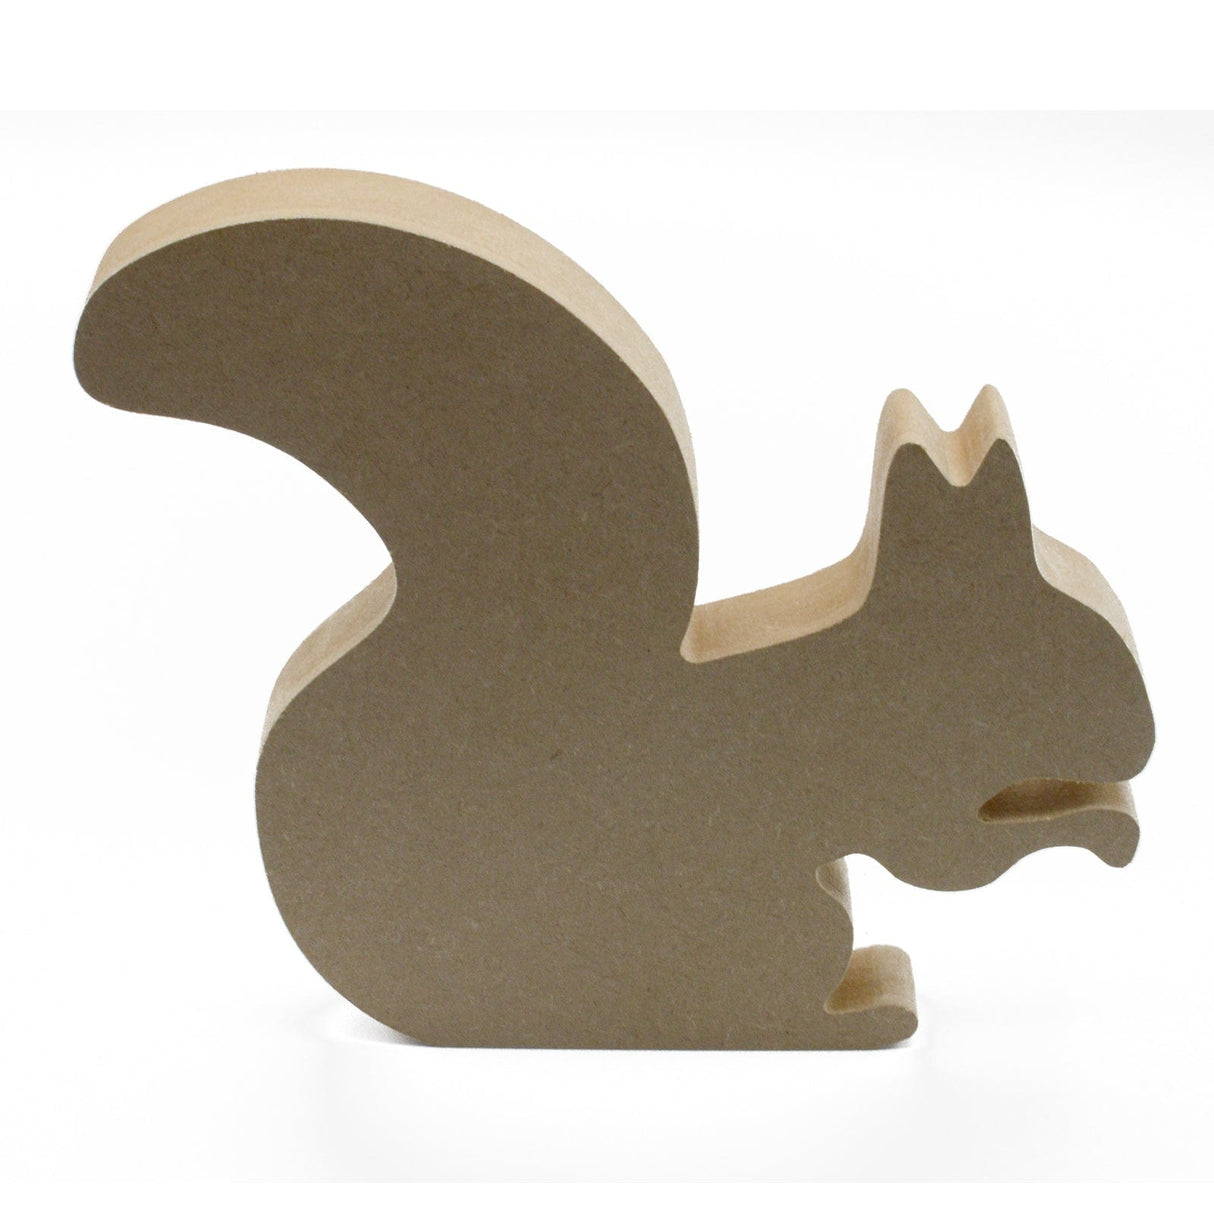 Laserworksuk Freestanding Squirrel Wooden Wildlife Craft Shapes